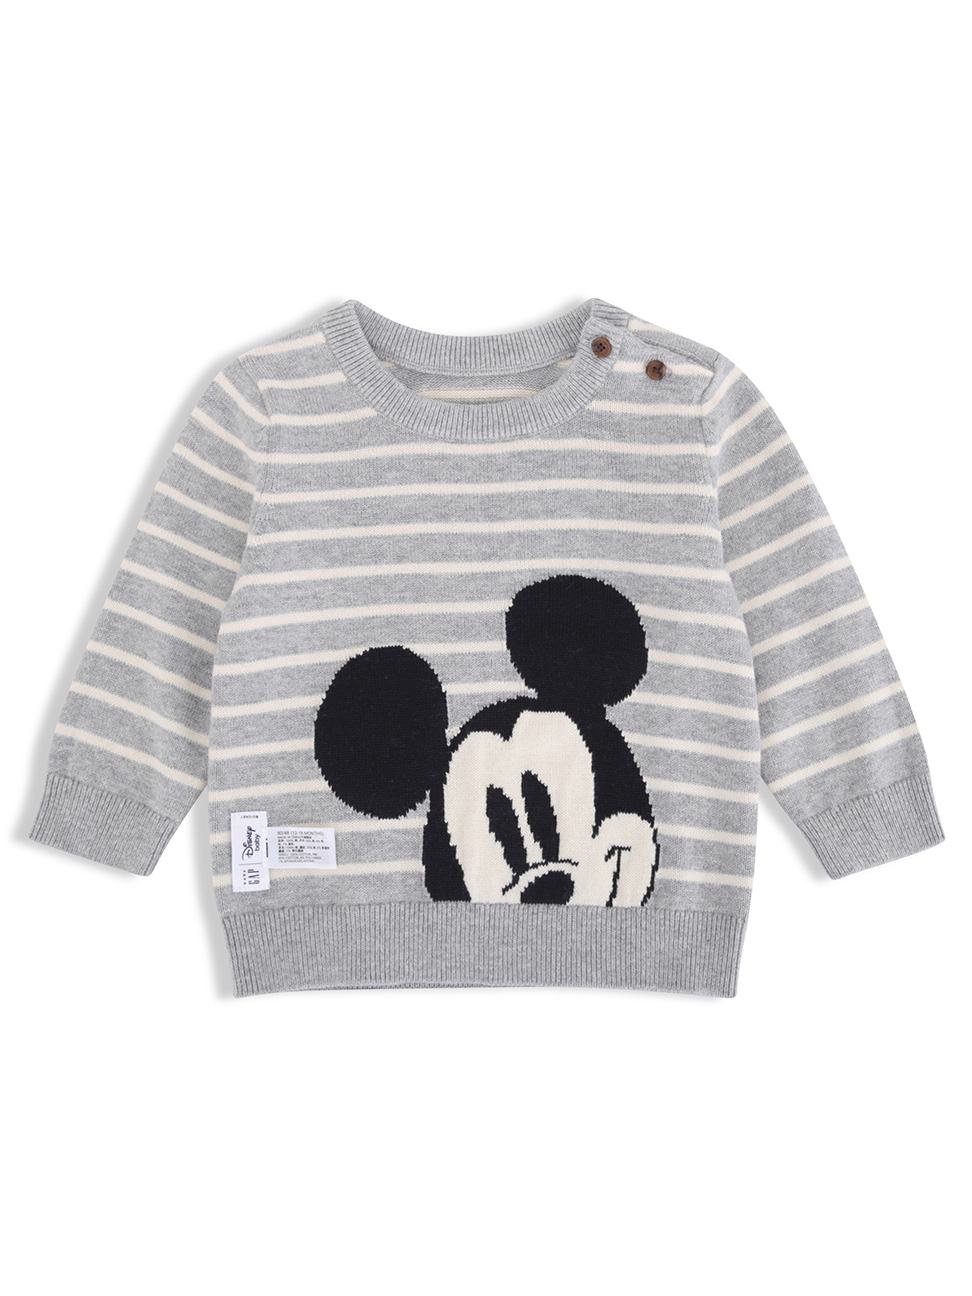 嬰兒裝|Gap x Disney迪士尼聯名 米奇棉質舒適圓領針織衫-淺麻灰